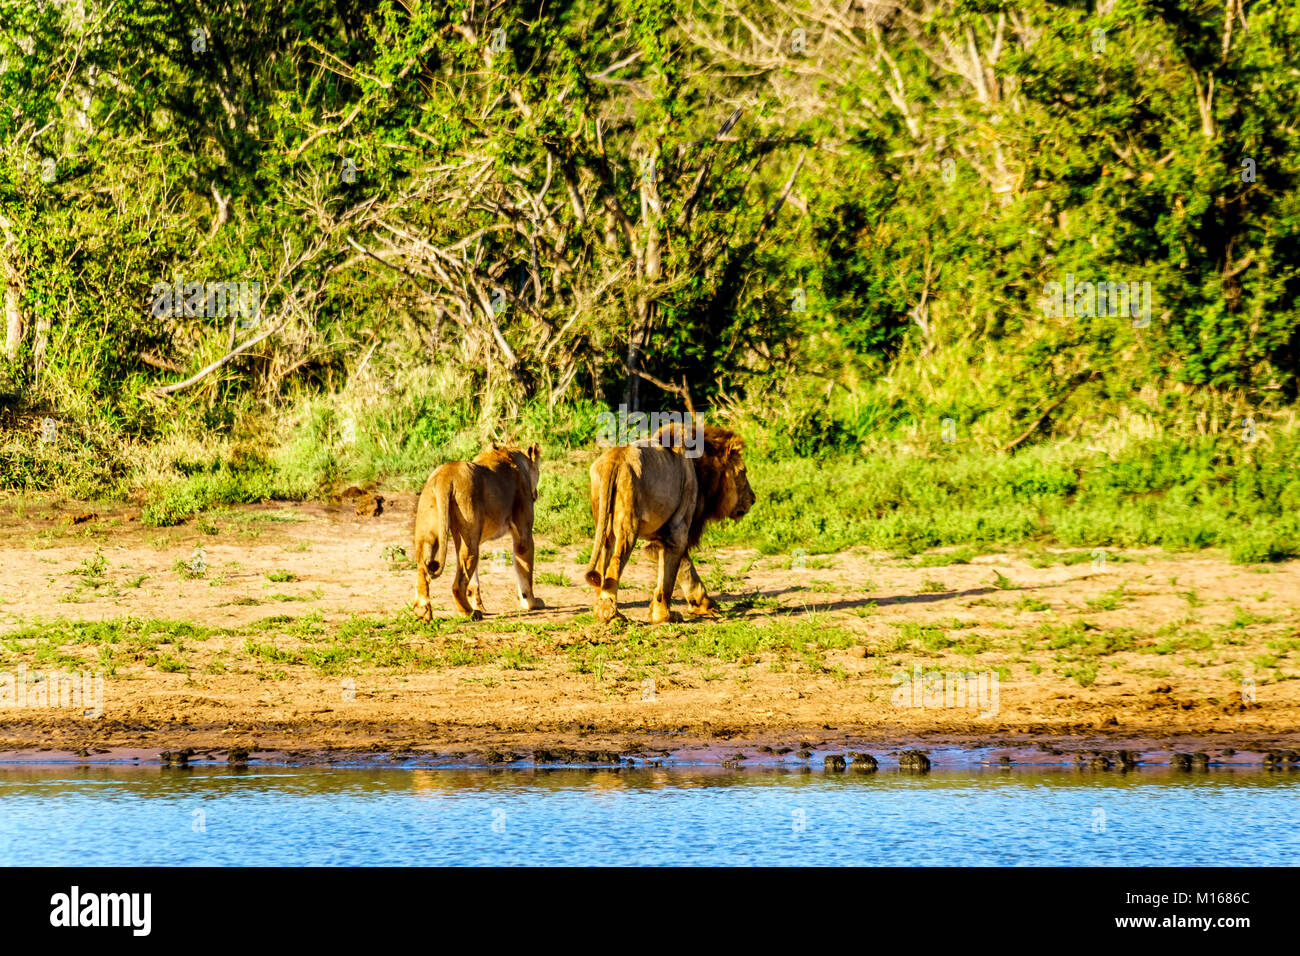 Después de beber el agua de la Sartén Nkaya abrevadero en el Parque Nacional Kruger Sudáfrica un león macho y hembra de dirigirse hacia el bosque Foto de stock